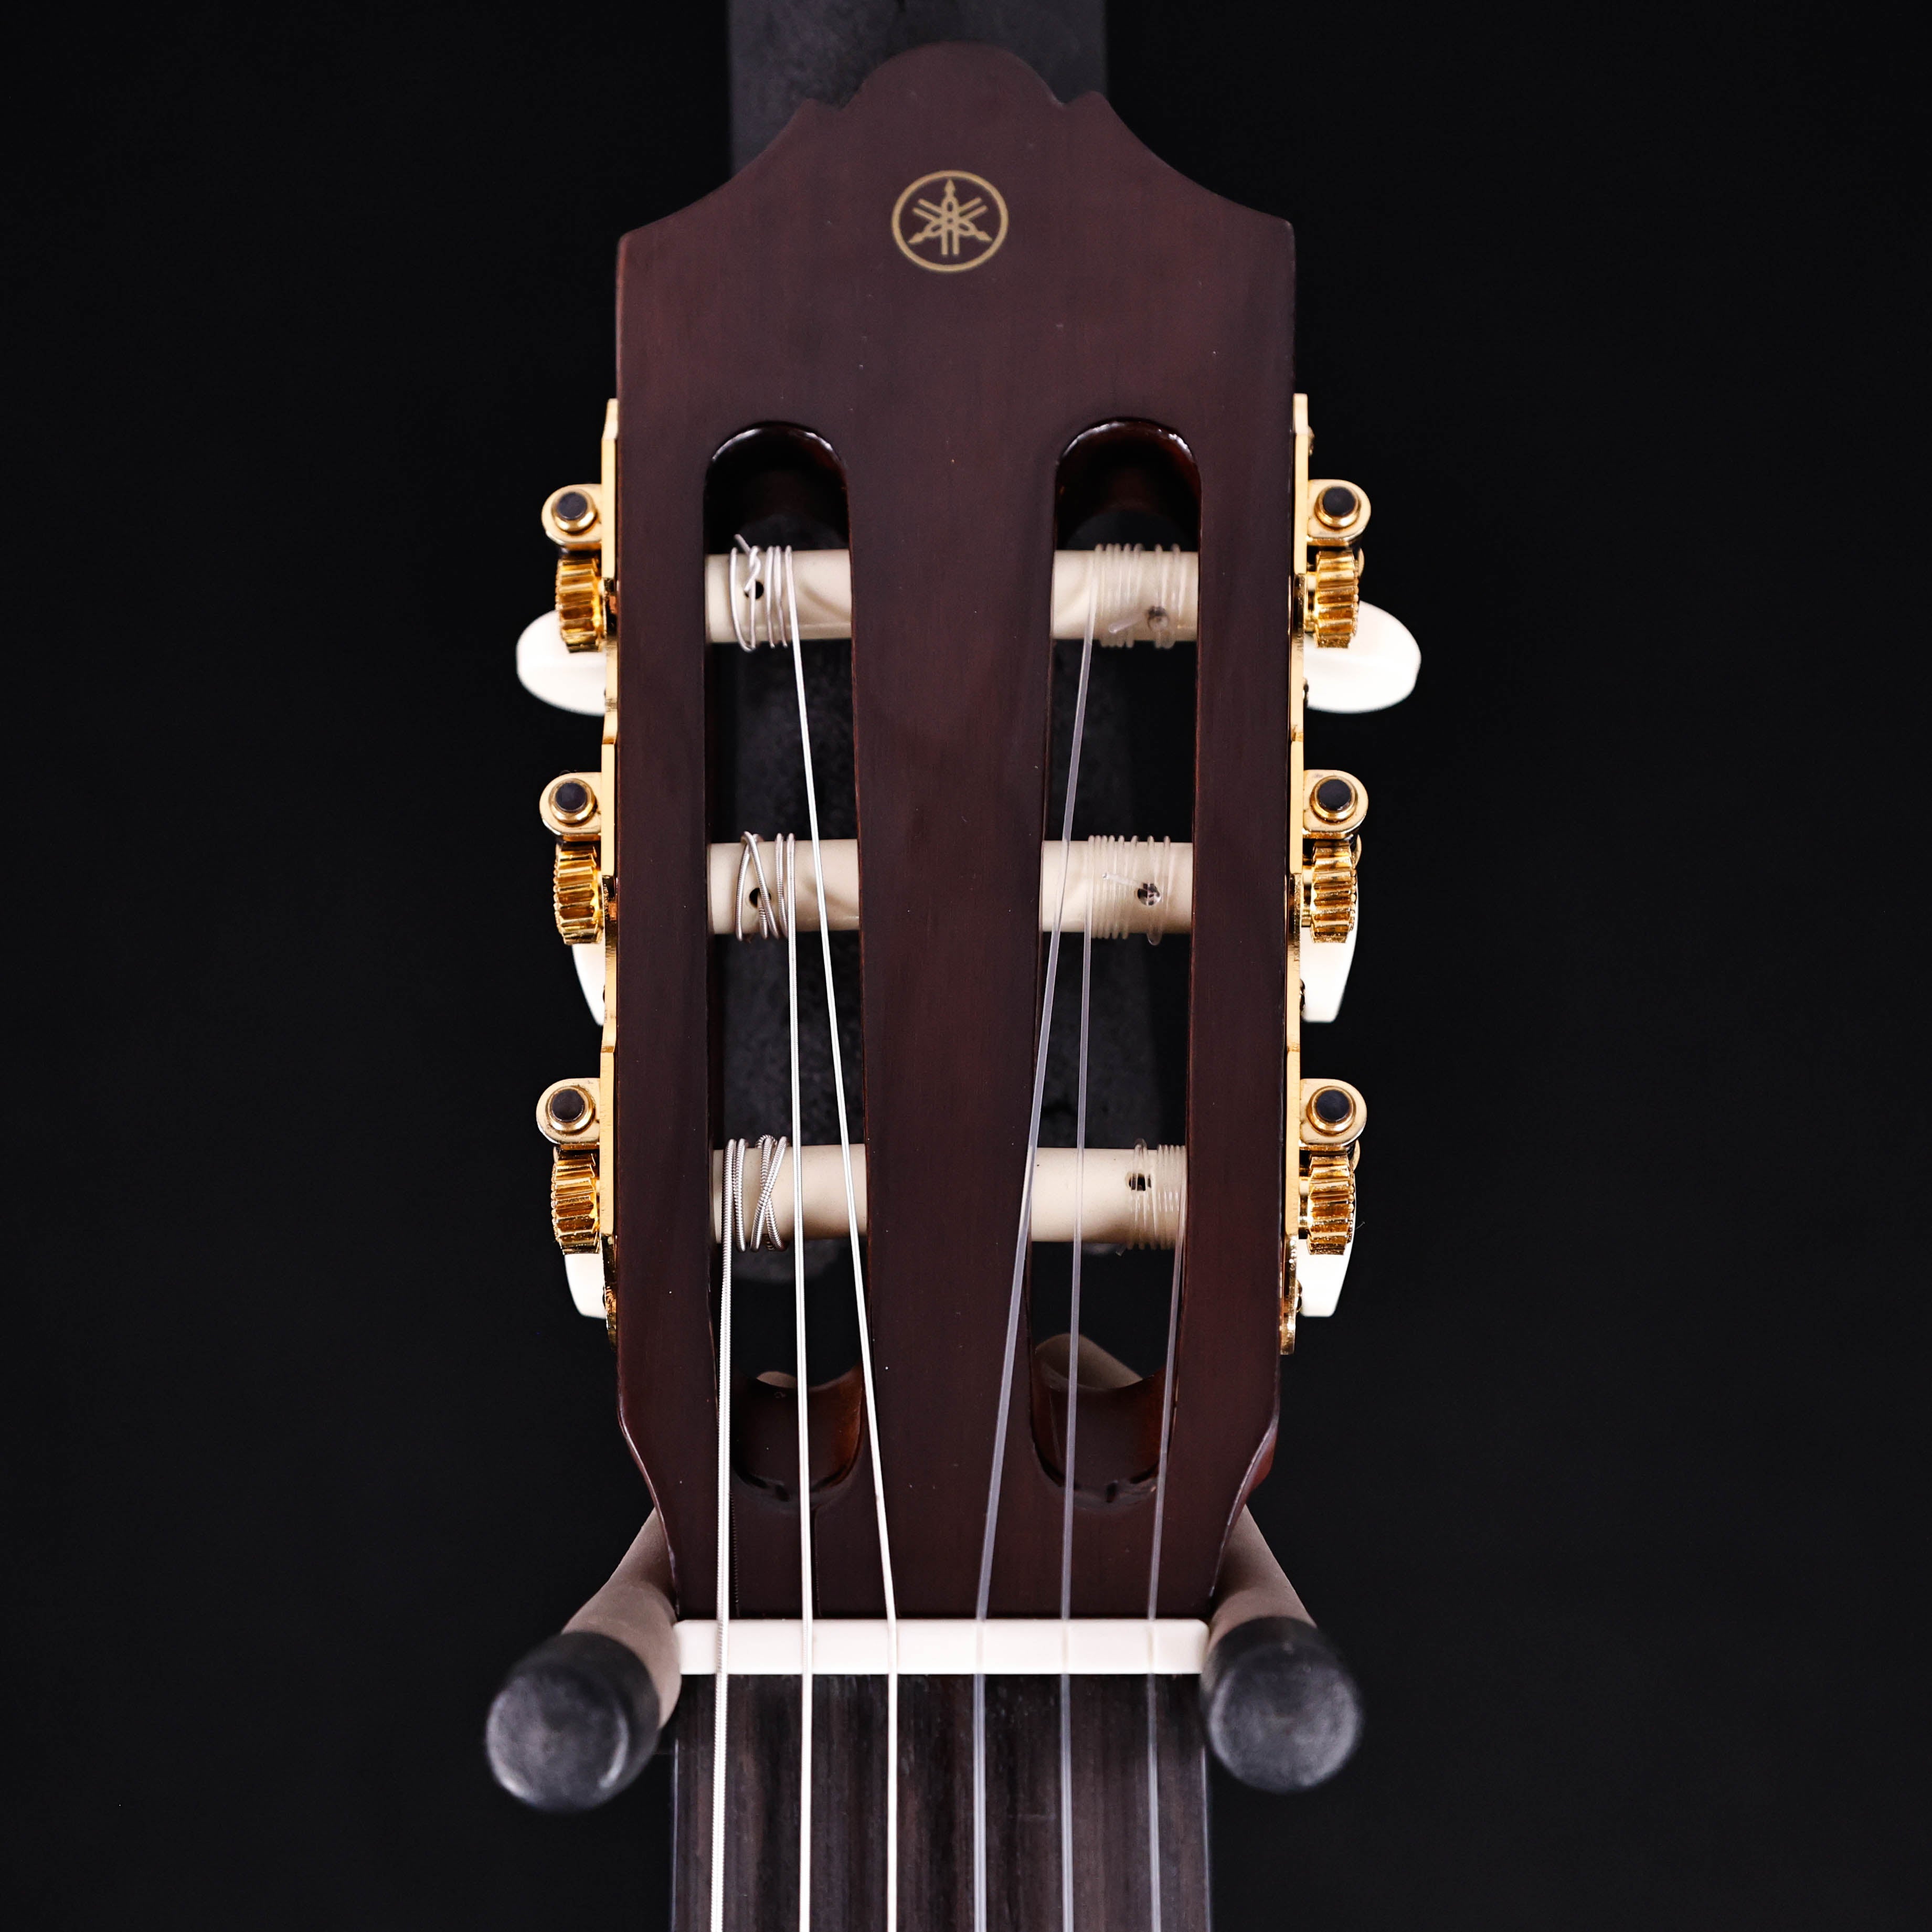 Yamaha CG192C Classical Guitar, Cedar Top 3lbs 6.1oz